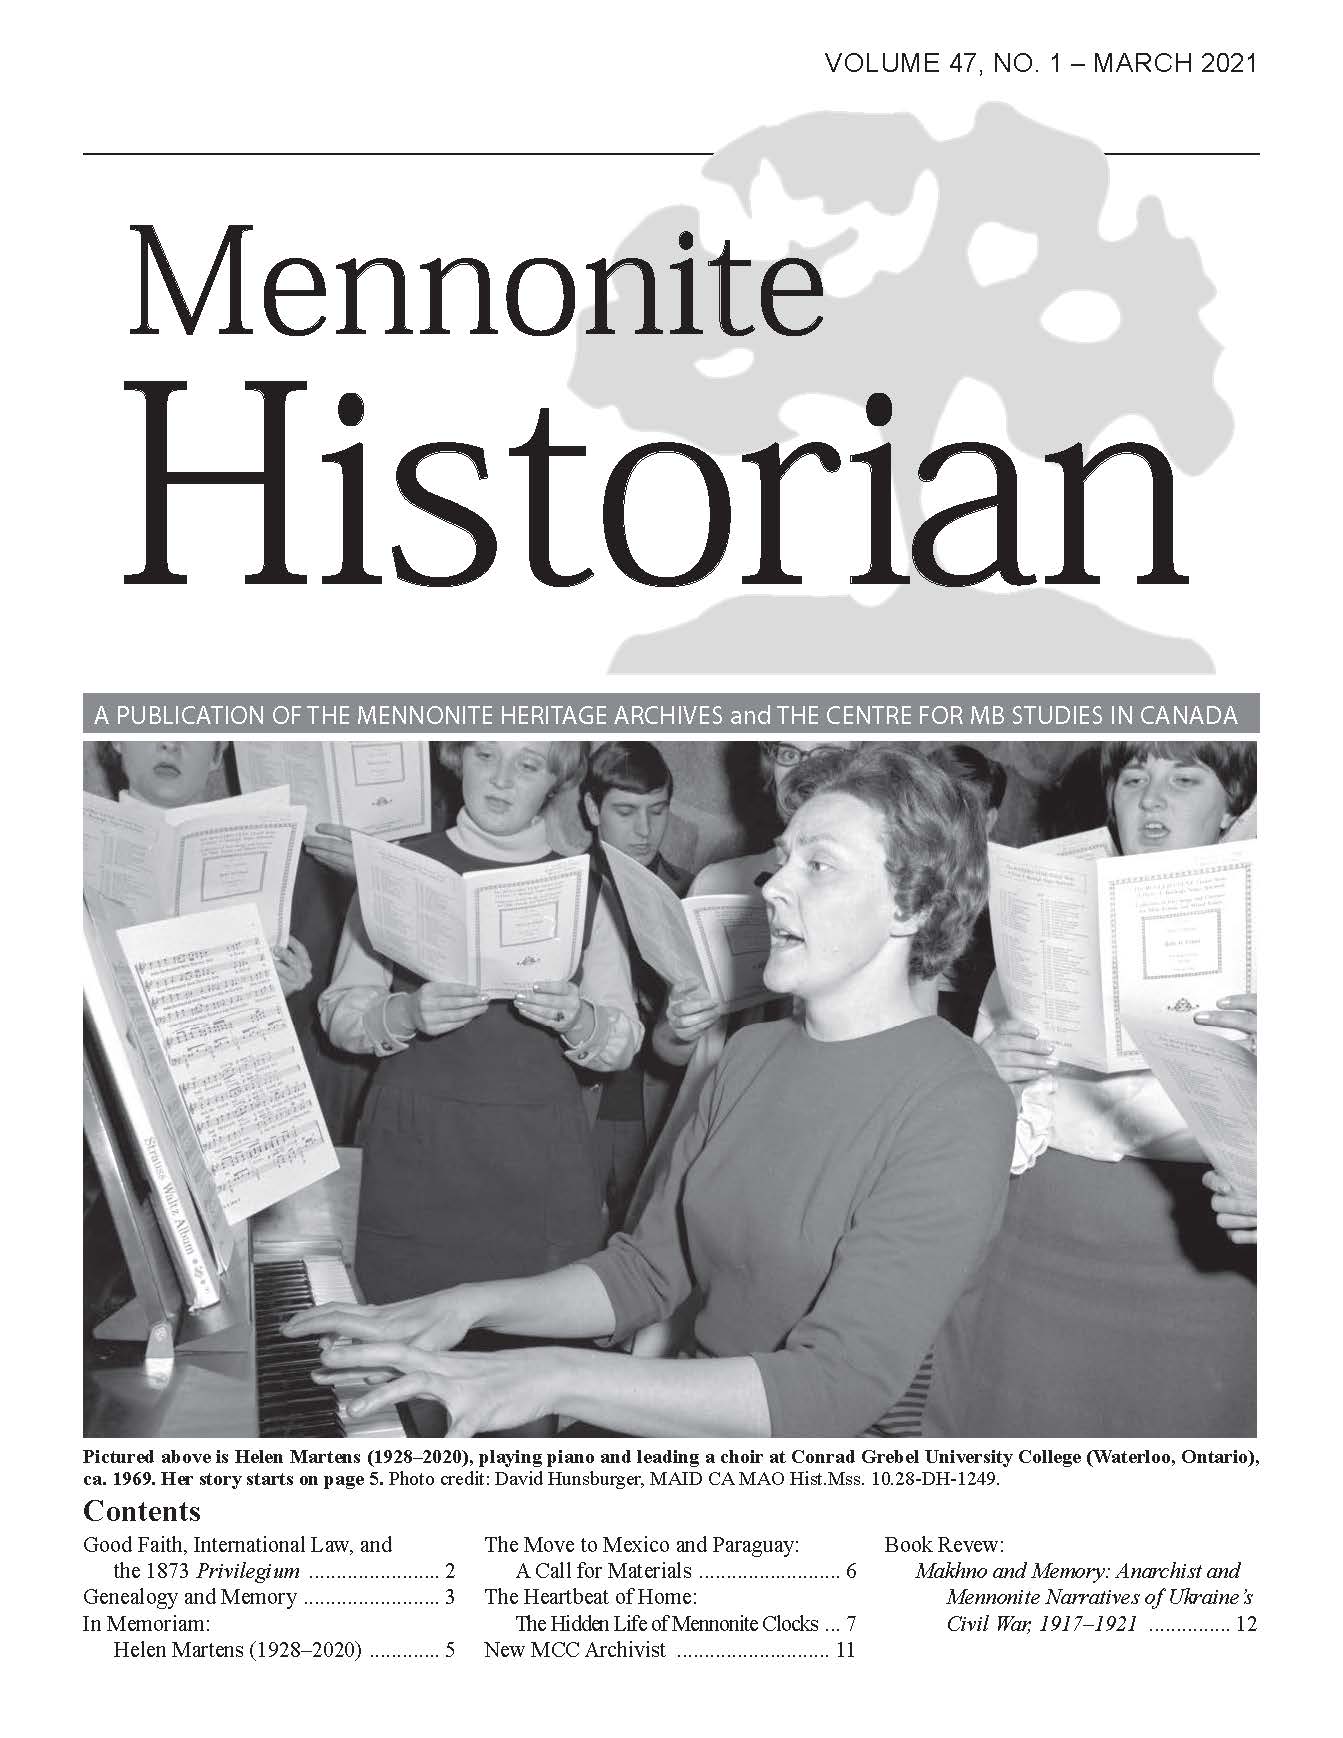 Mennonite Historian (March 2021)